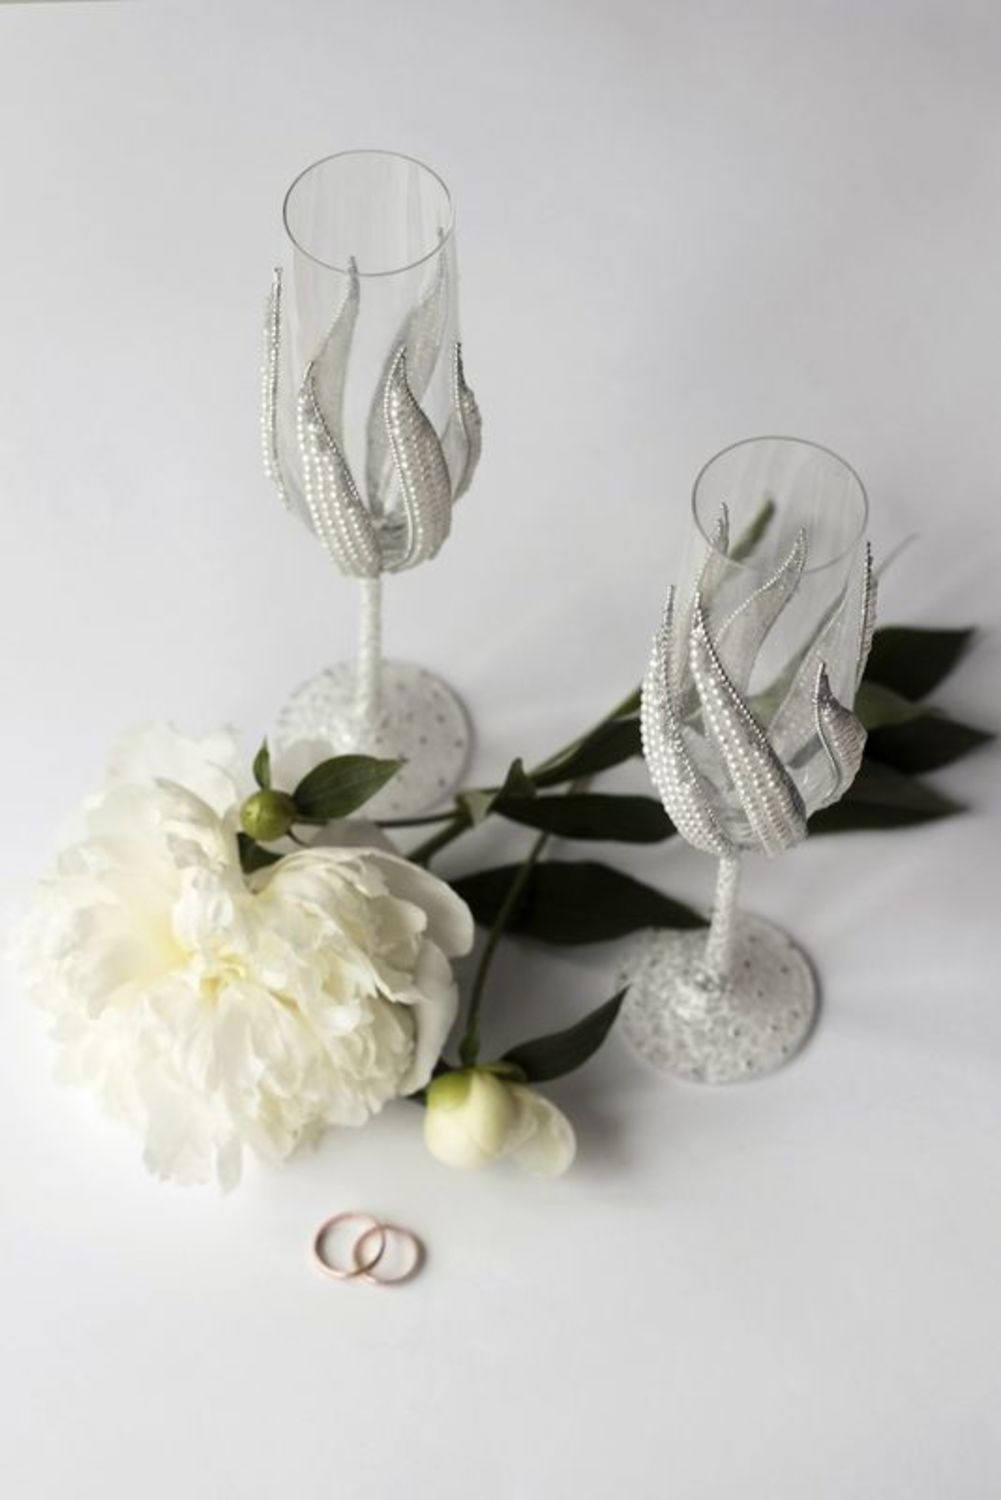 Boccali nuziali fatti a mano calici per nozze accessori nuziali decorativi
 foto 1